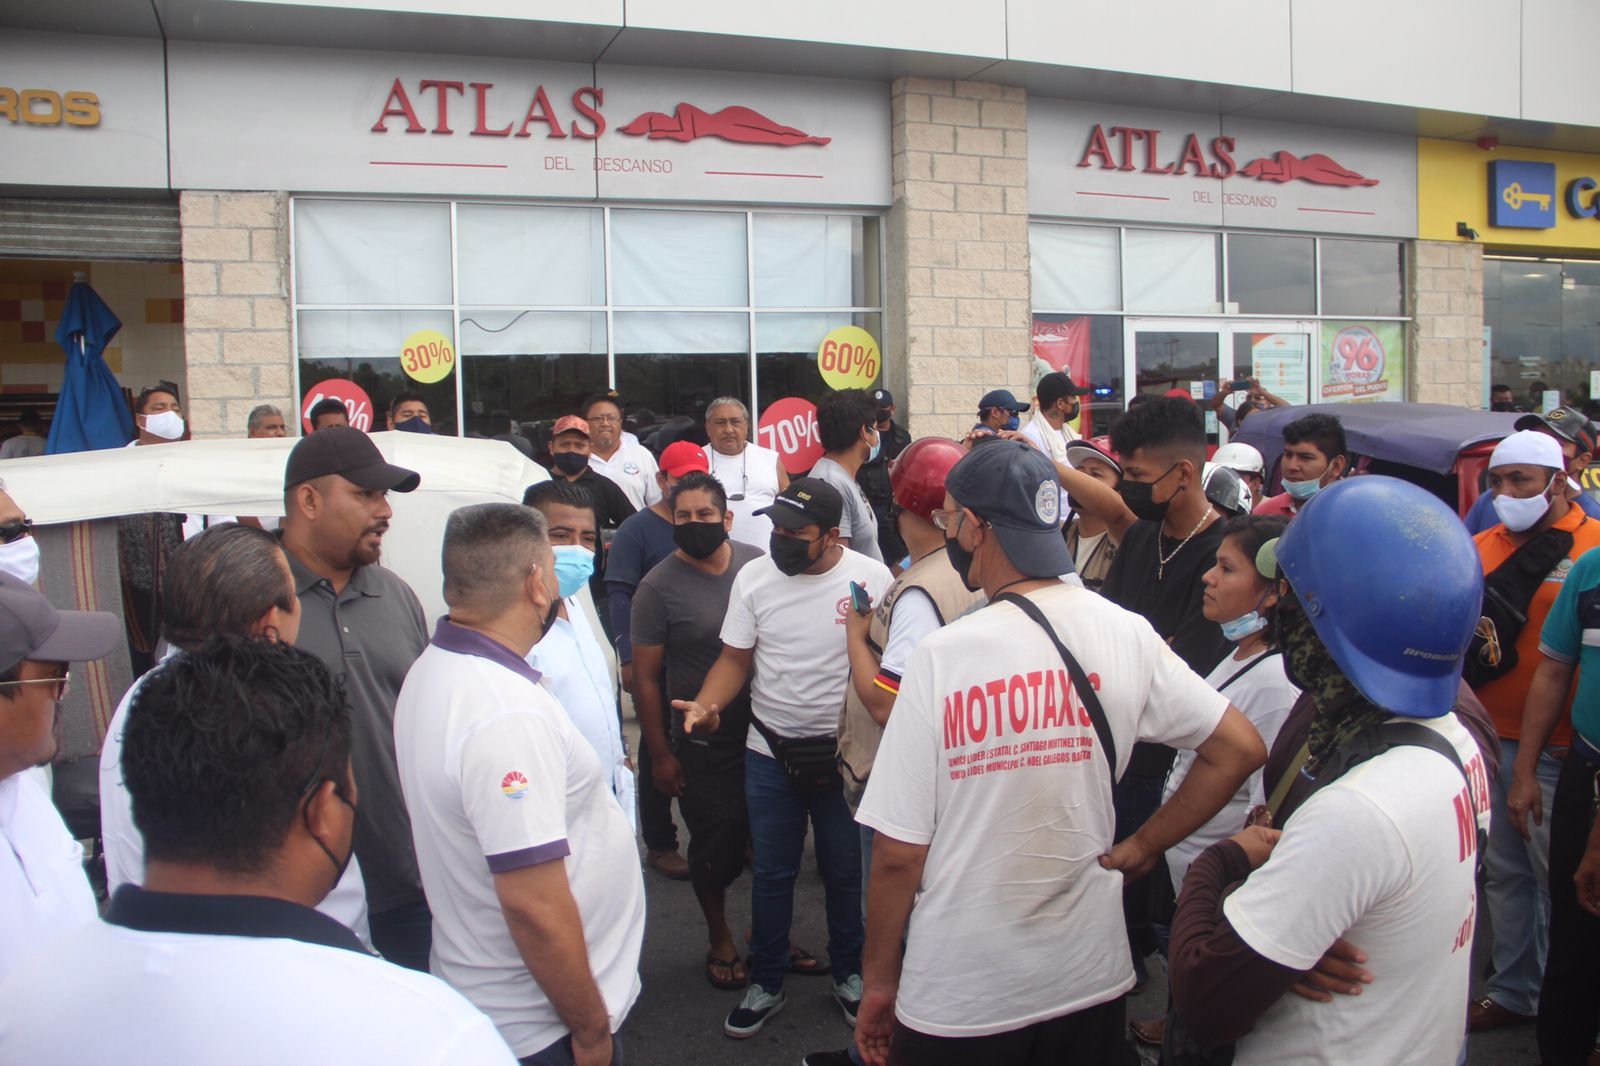 Taxistas se pelean con mototaxistas por permisos para operar en la Plaza Paseos Arco Norte en Cancún